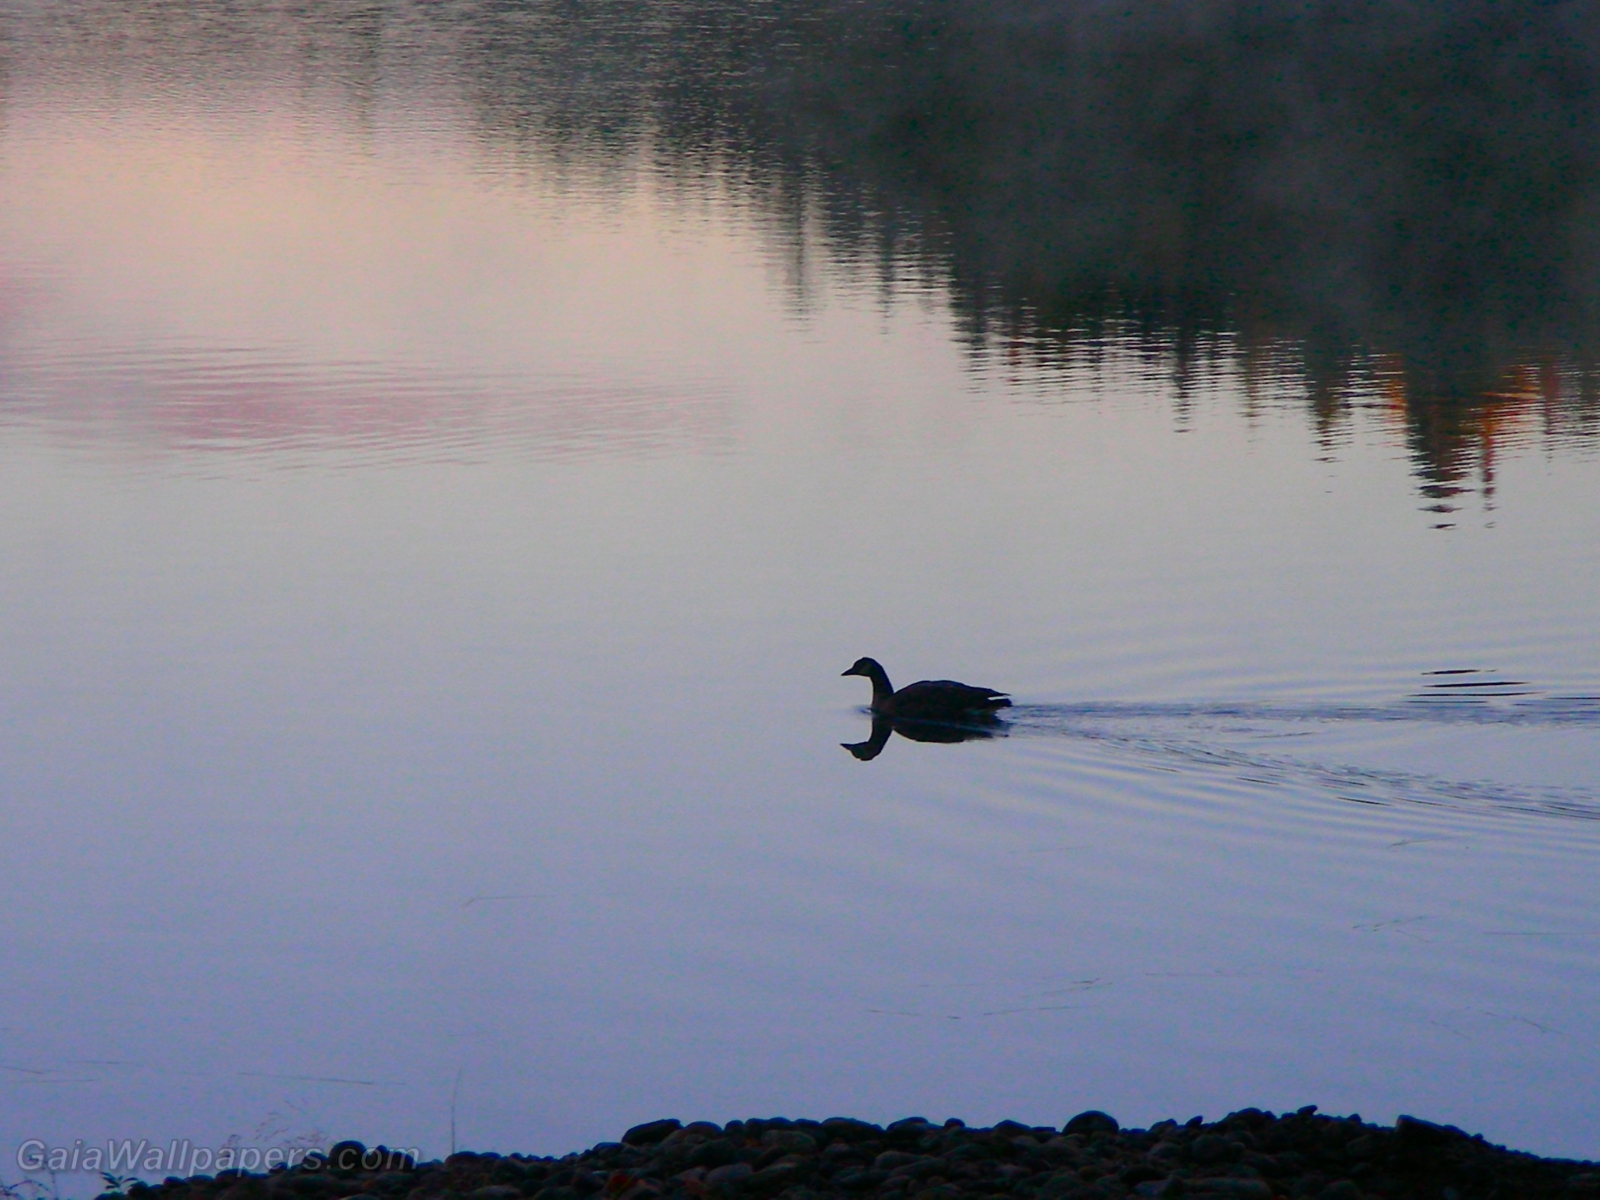 Canard nageant sur un lac calme - Fonds d'écran gratuits